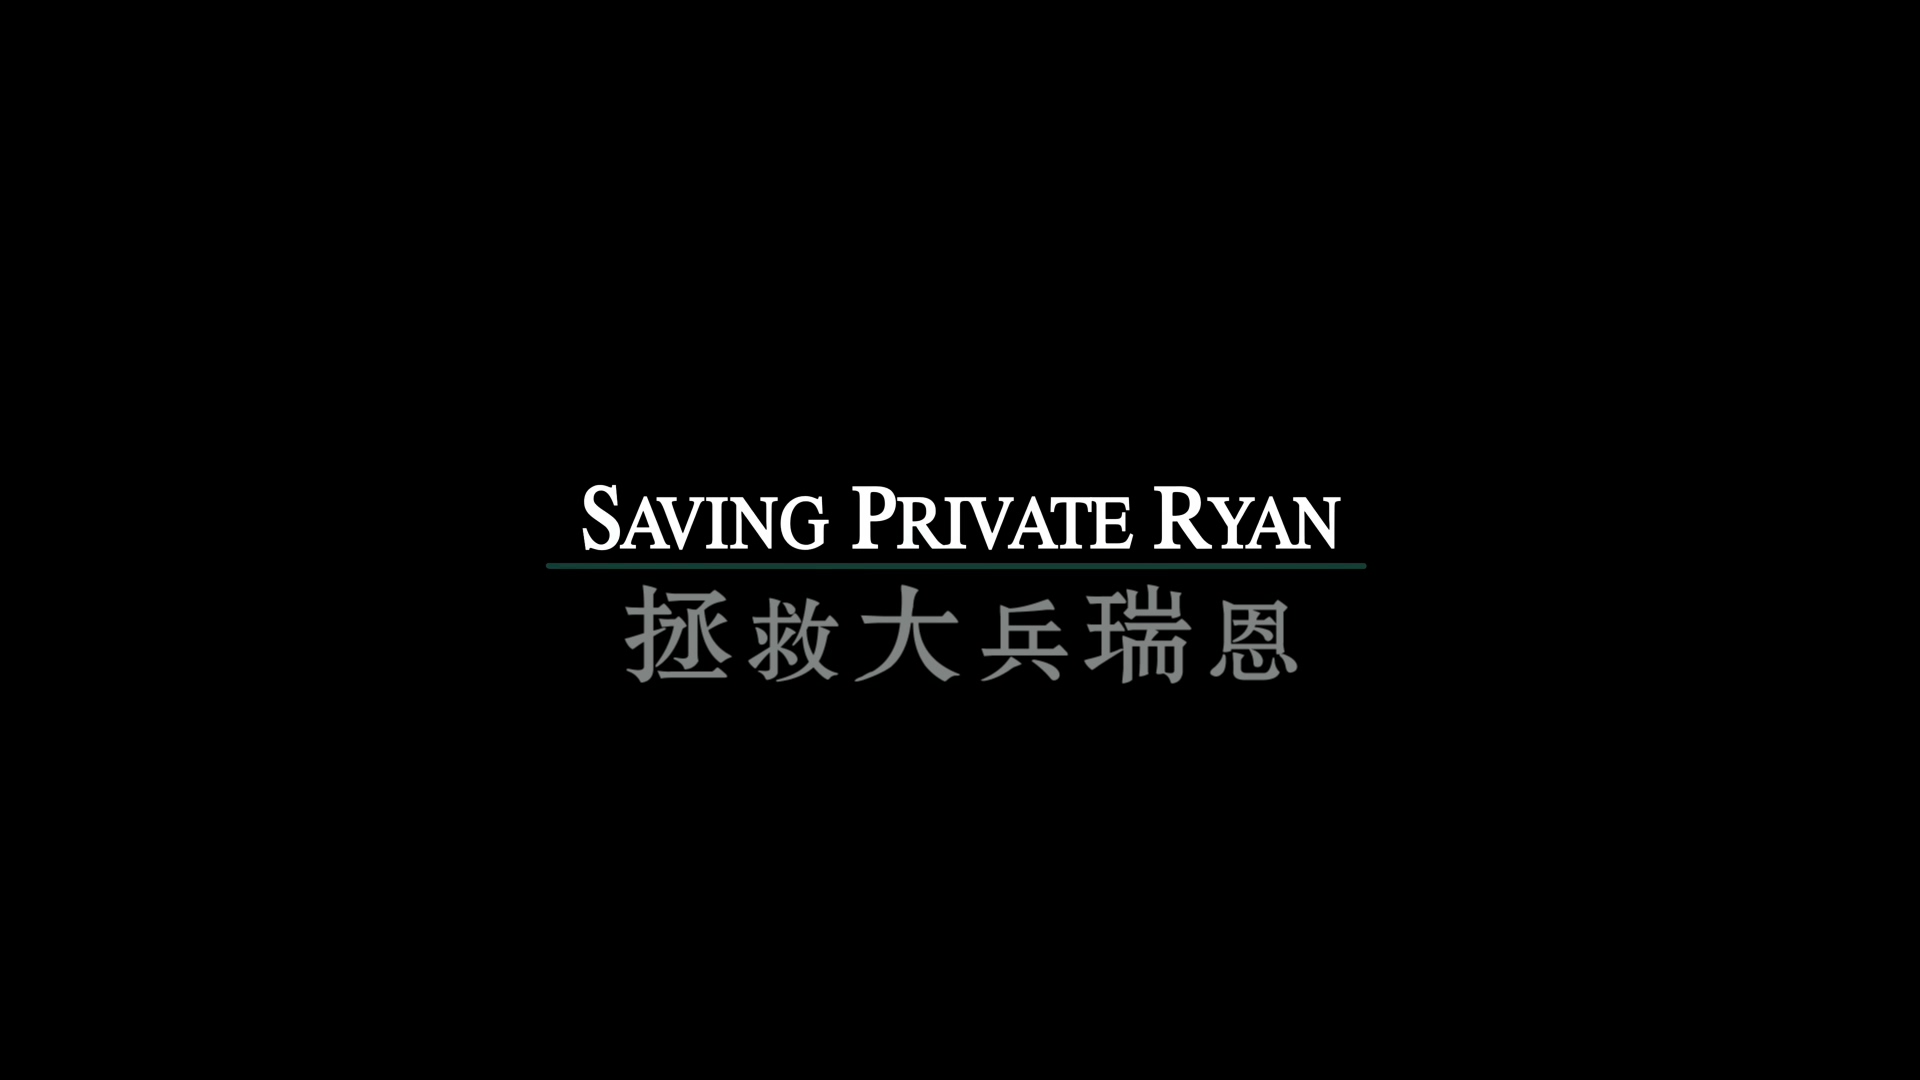 拯救大兵瑞恩[DIY简繁双语字幕] 4K UHD原盘 [保留dolby vision] 自看版 Saving Private Ryan 1998 2160p UHD Blu-ray HEVC Atmos-wezjh@OurBits     [82.21 GB]-4.jpg